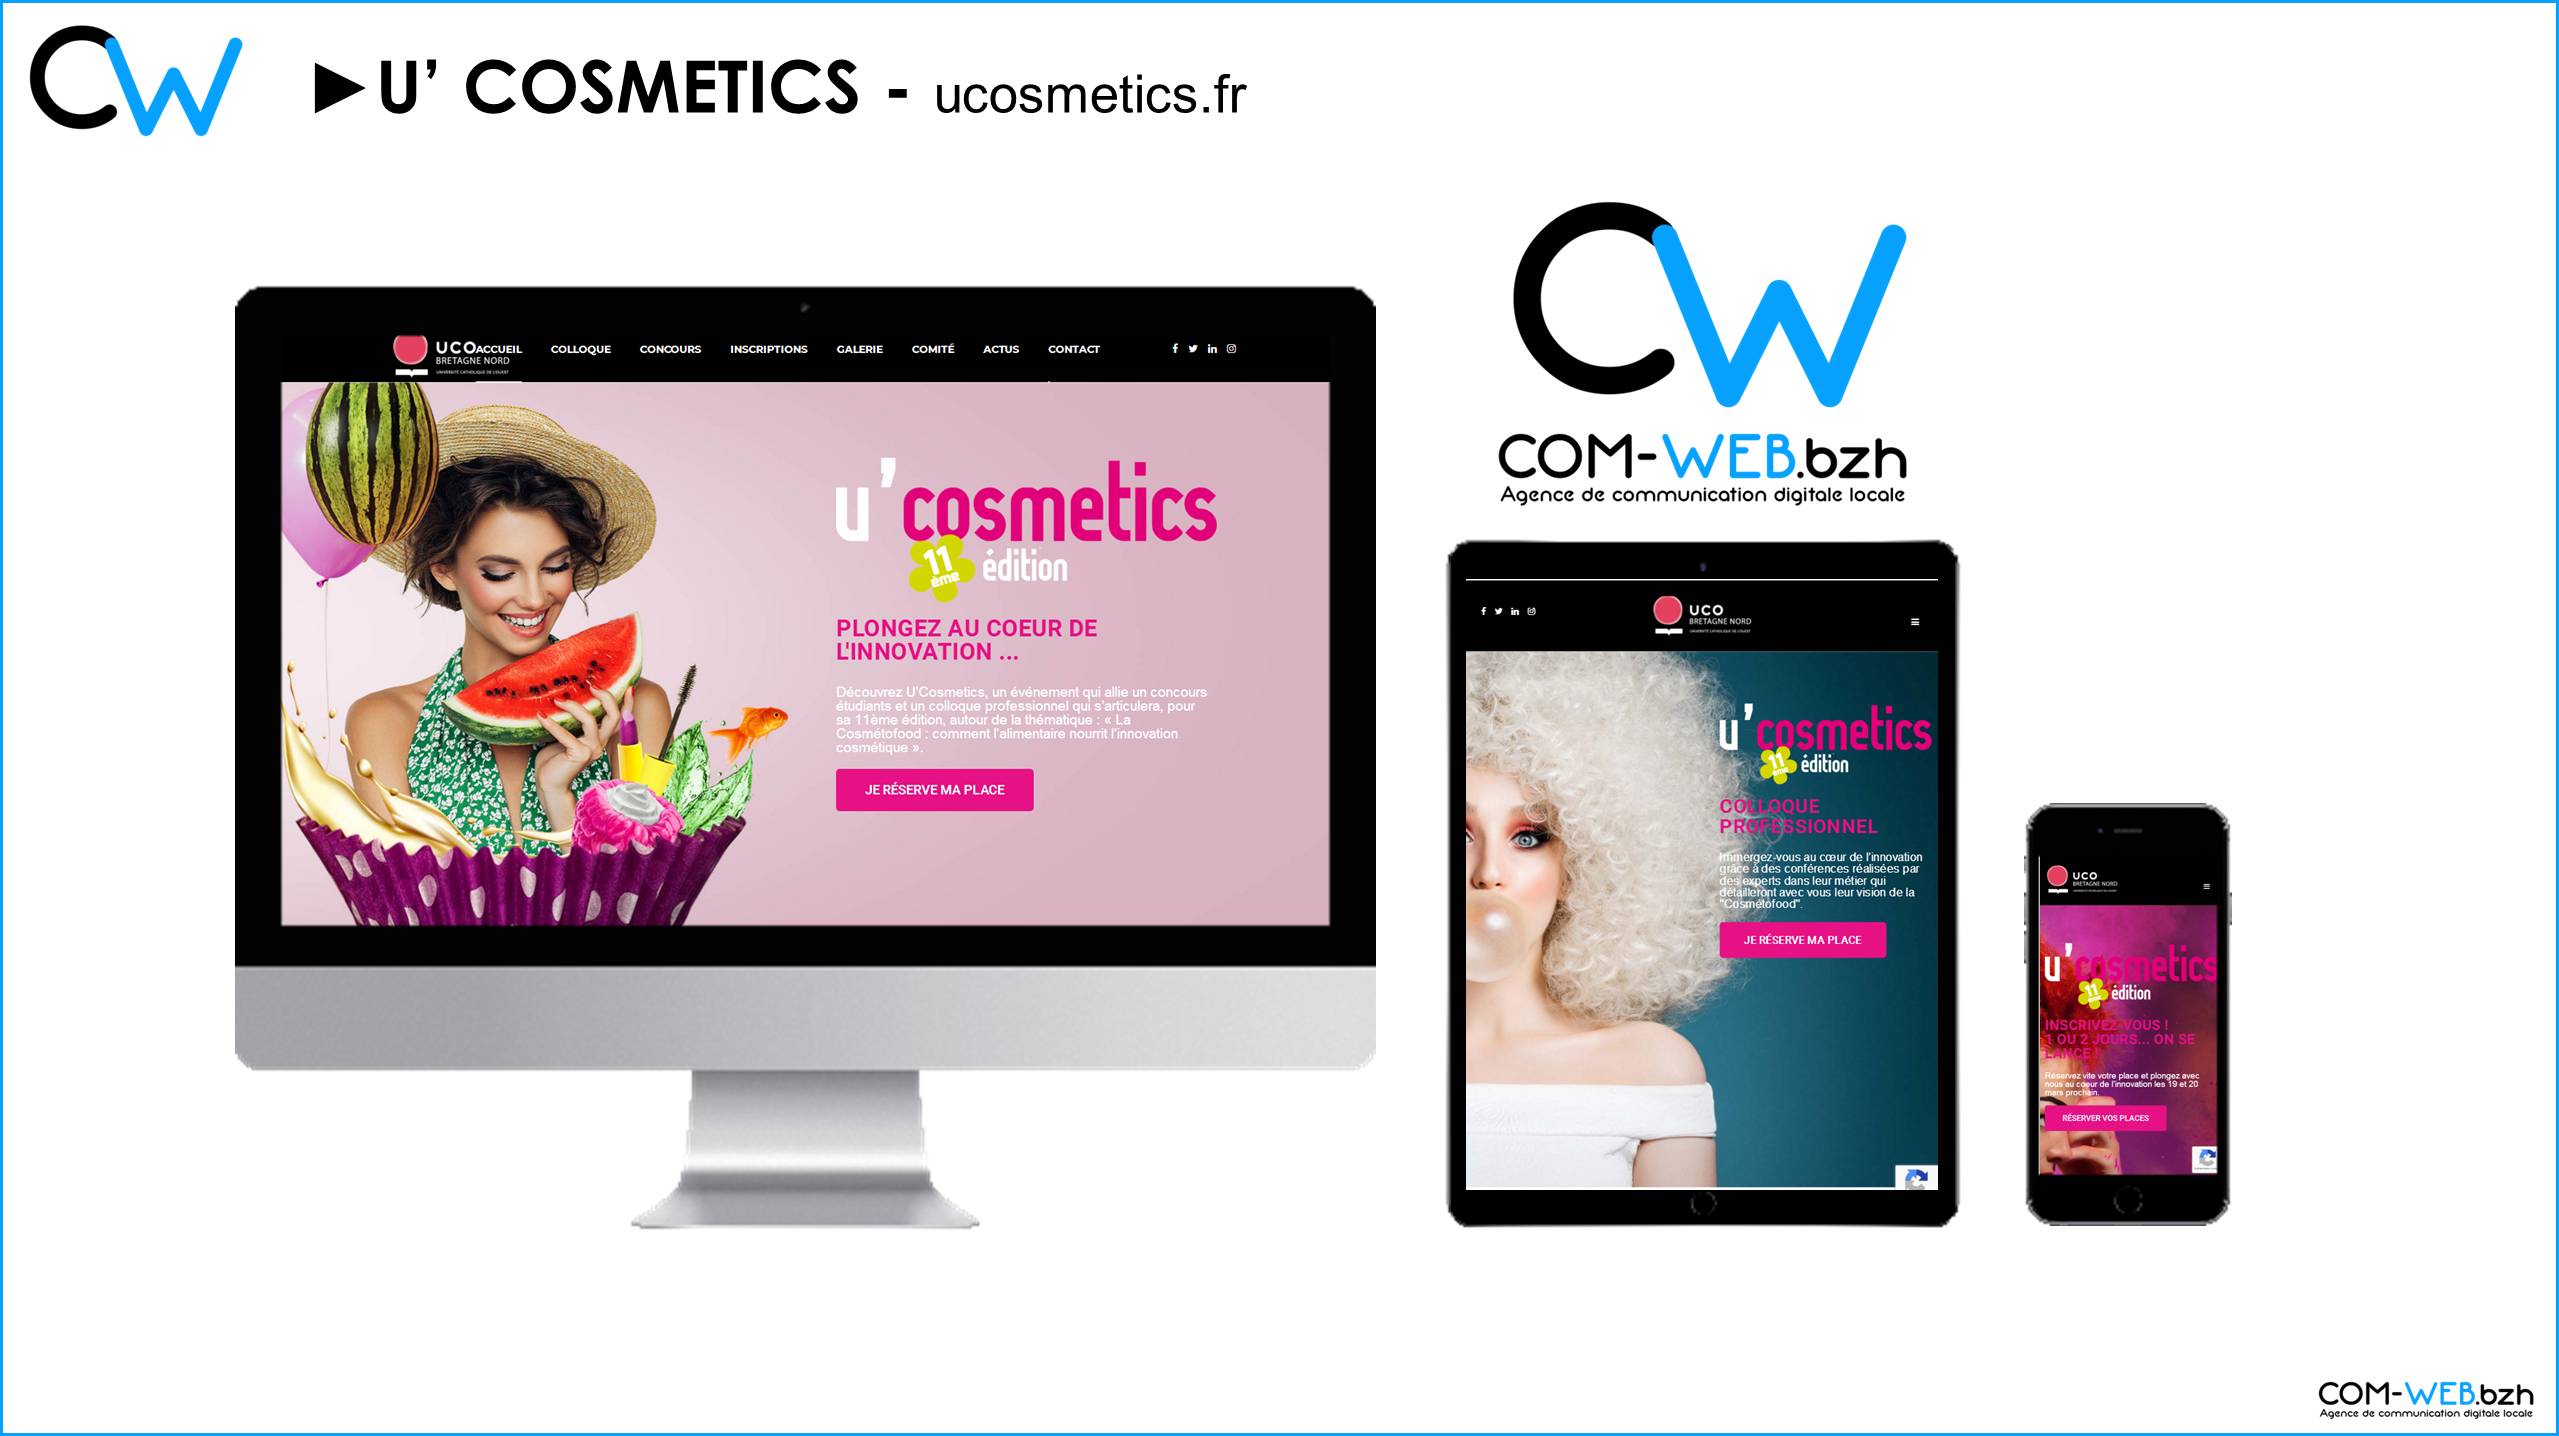 Com-Web.bzh design le nouveau site web du colloque U’Cosmetics